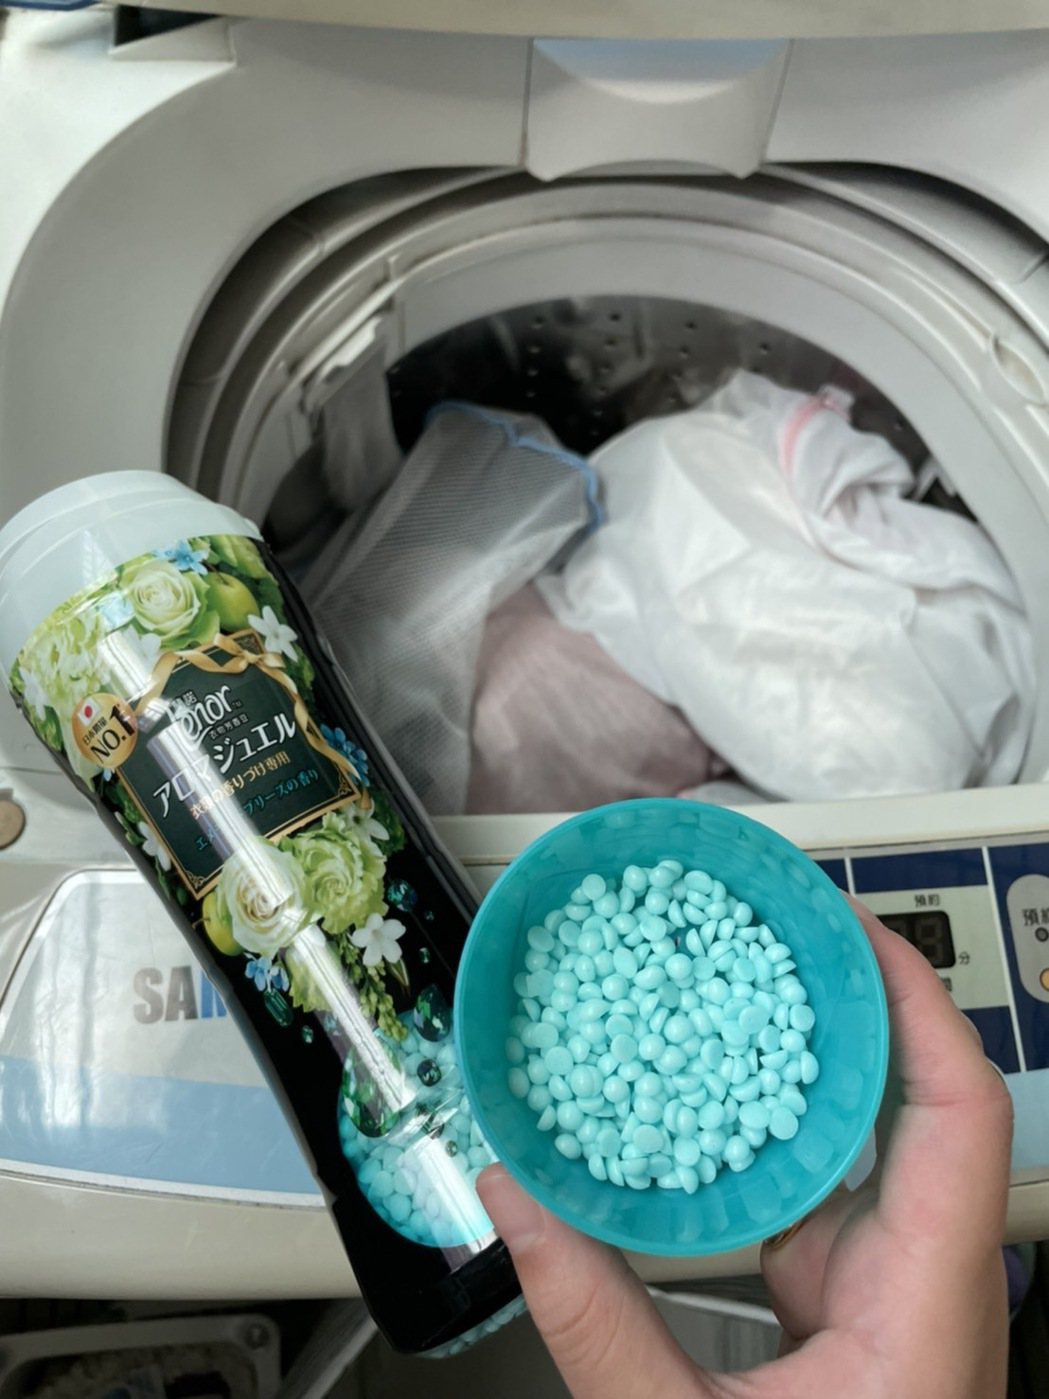 收納除了乾淨整潔之外氣味也相當重要。照片提供：翻攝自臉書《momo網購好物交流》...